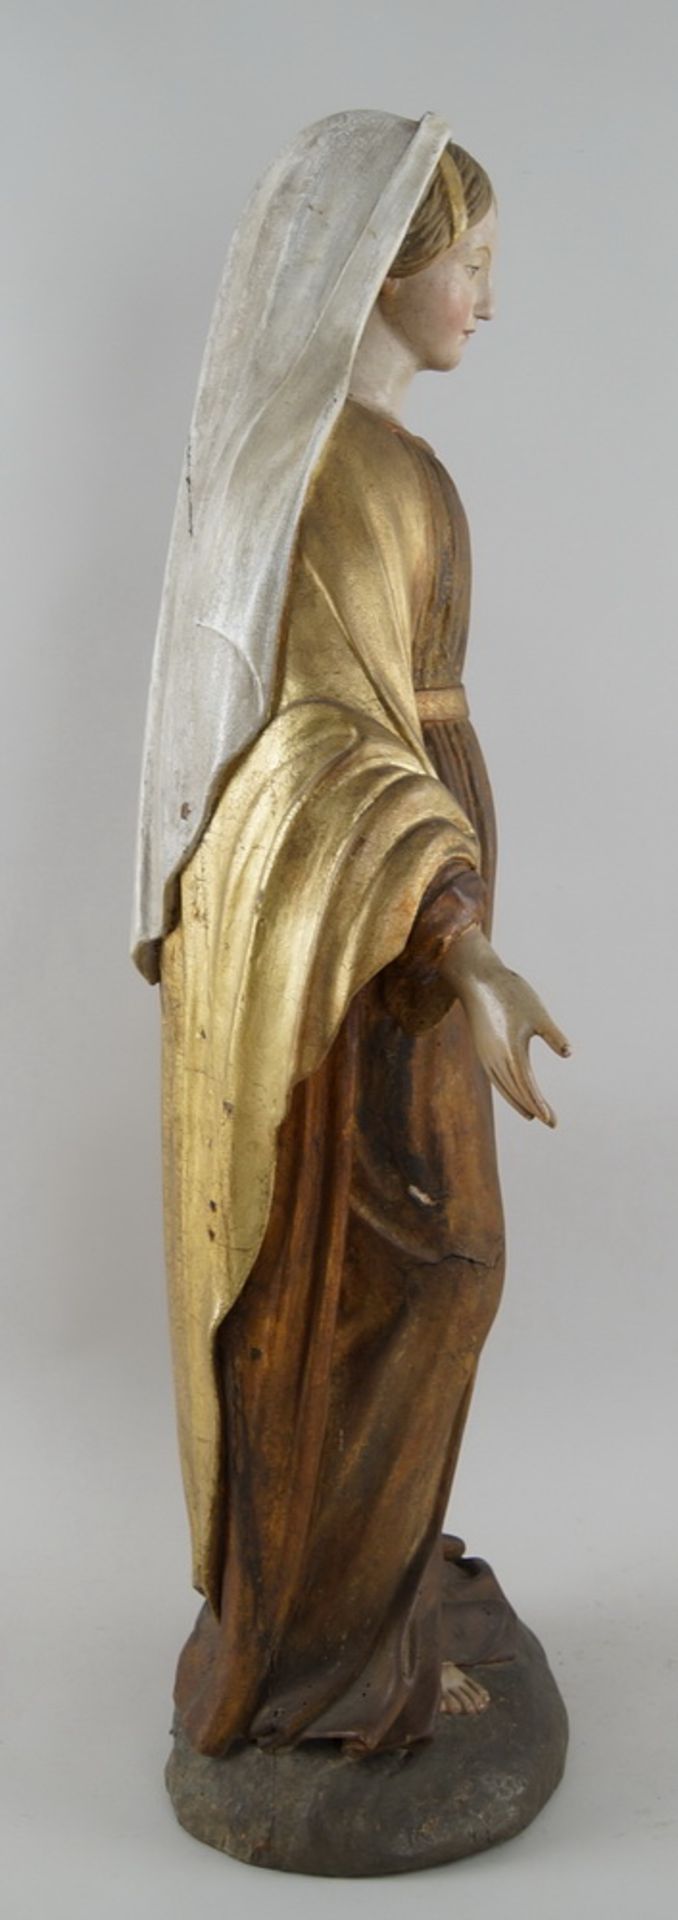 Prächtige neapolitanische Madonna, 19. JH, Holz geschnitzt und gefasst, vergoldet, H 91cm - Bild 9 aus 10